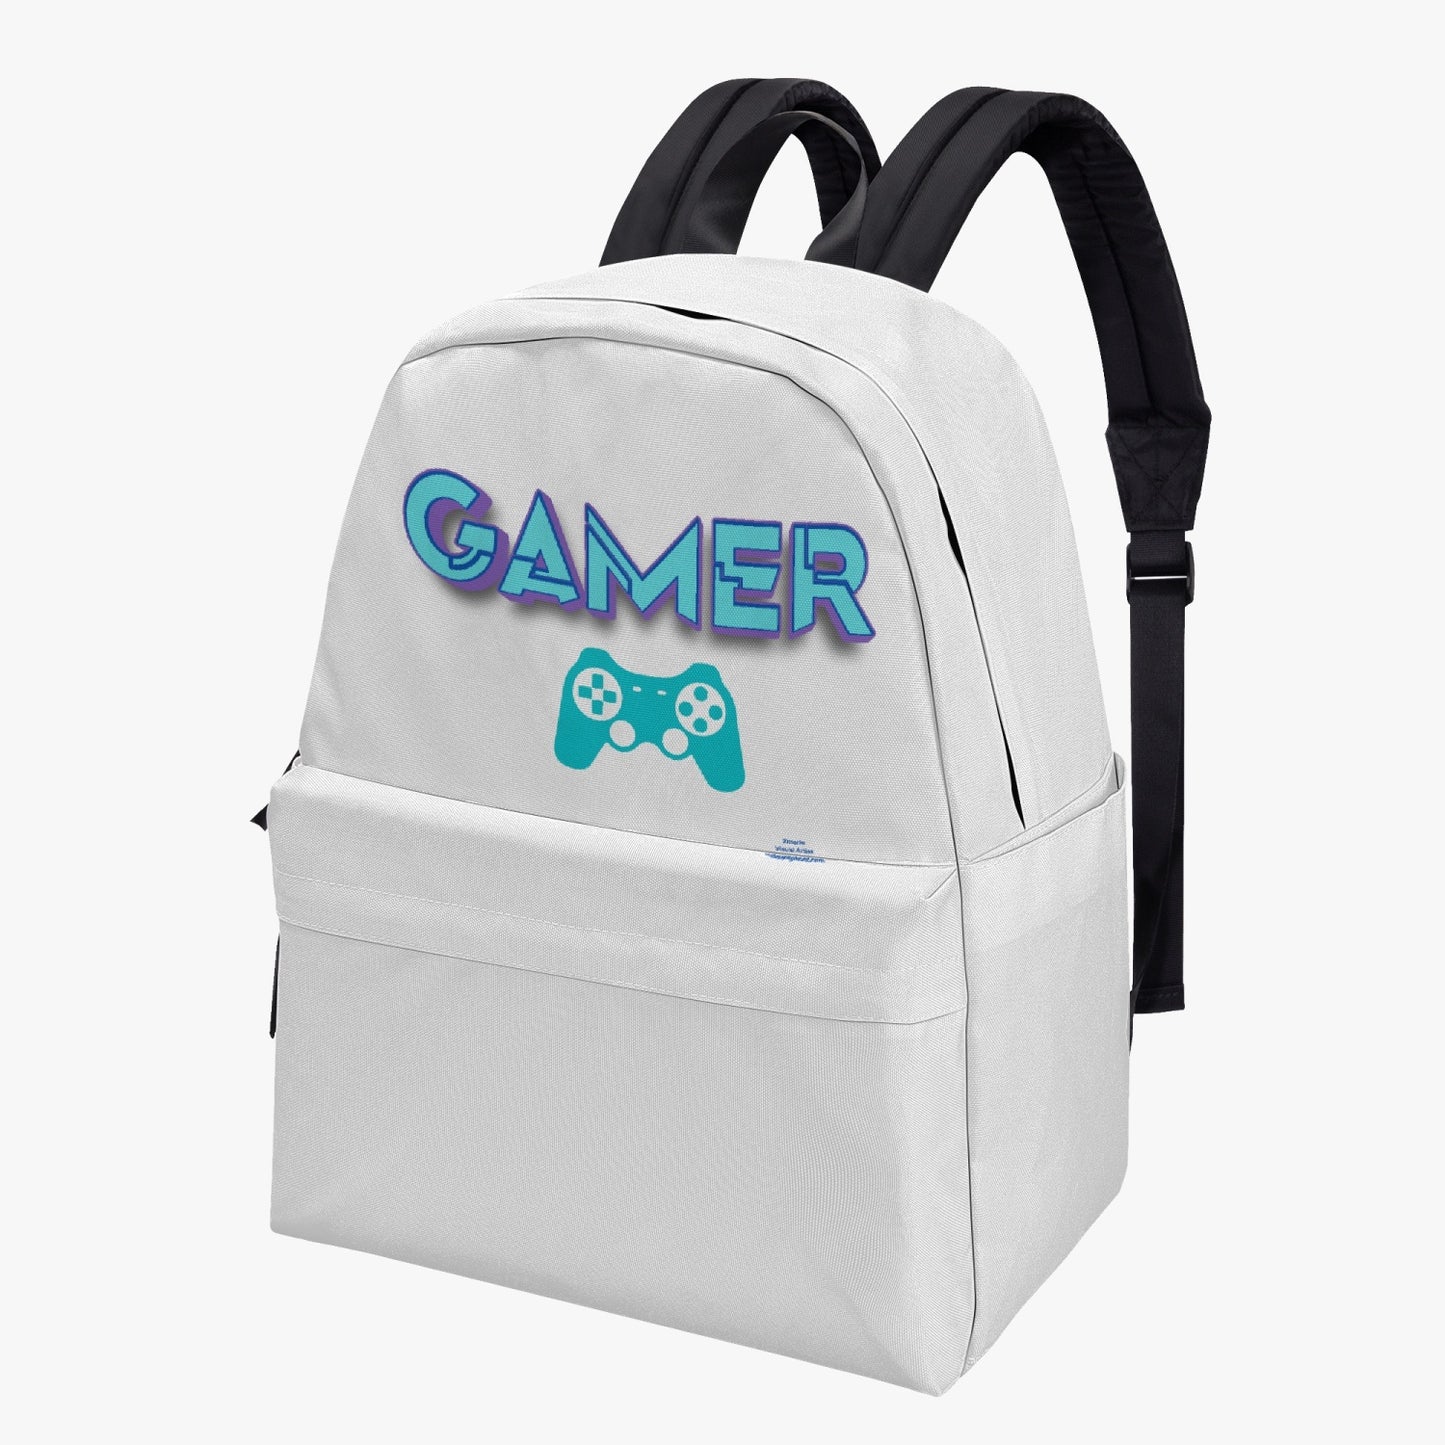 GAMER Canvas Backpack